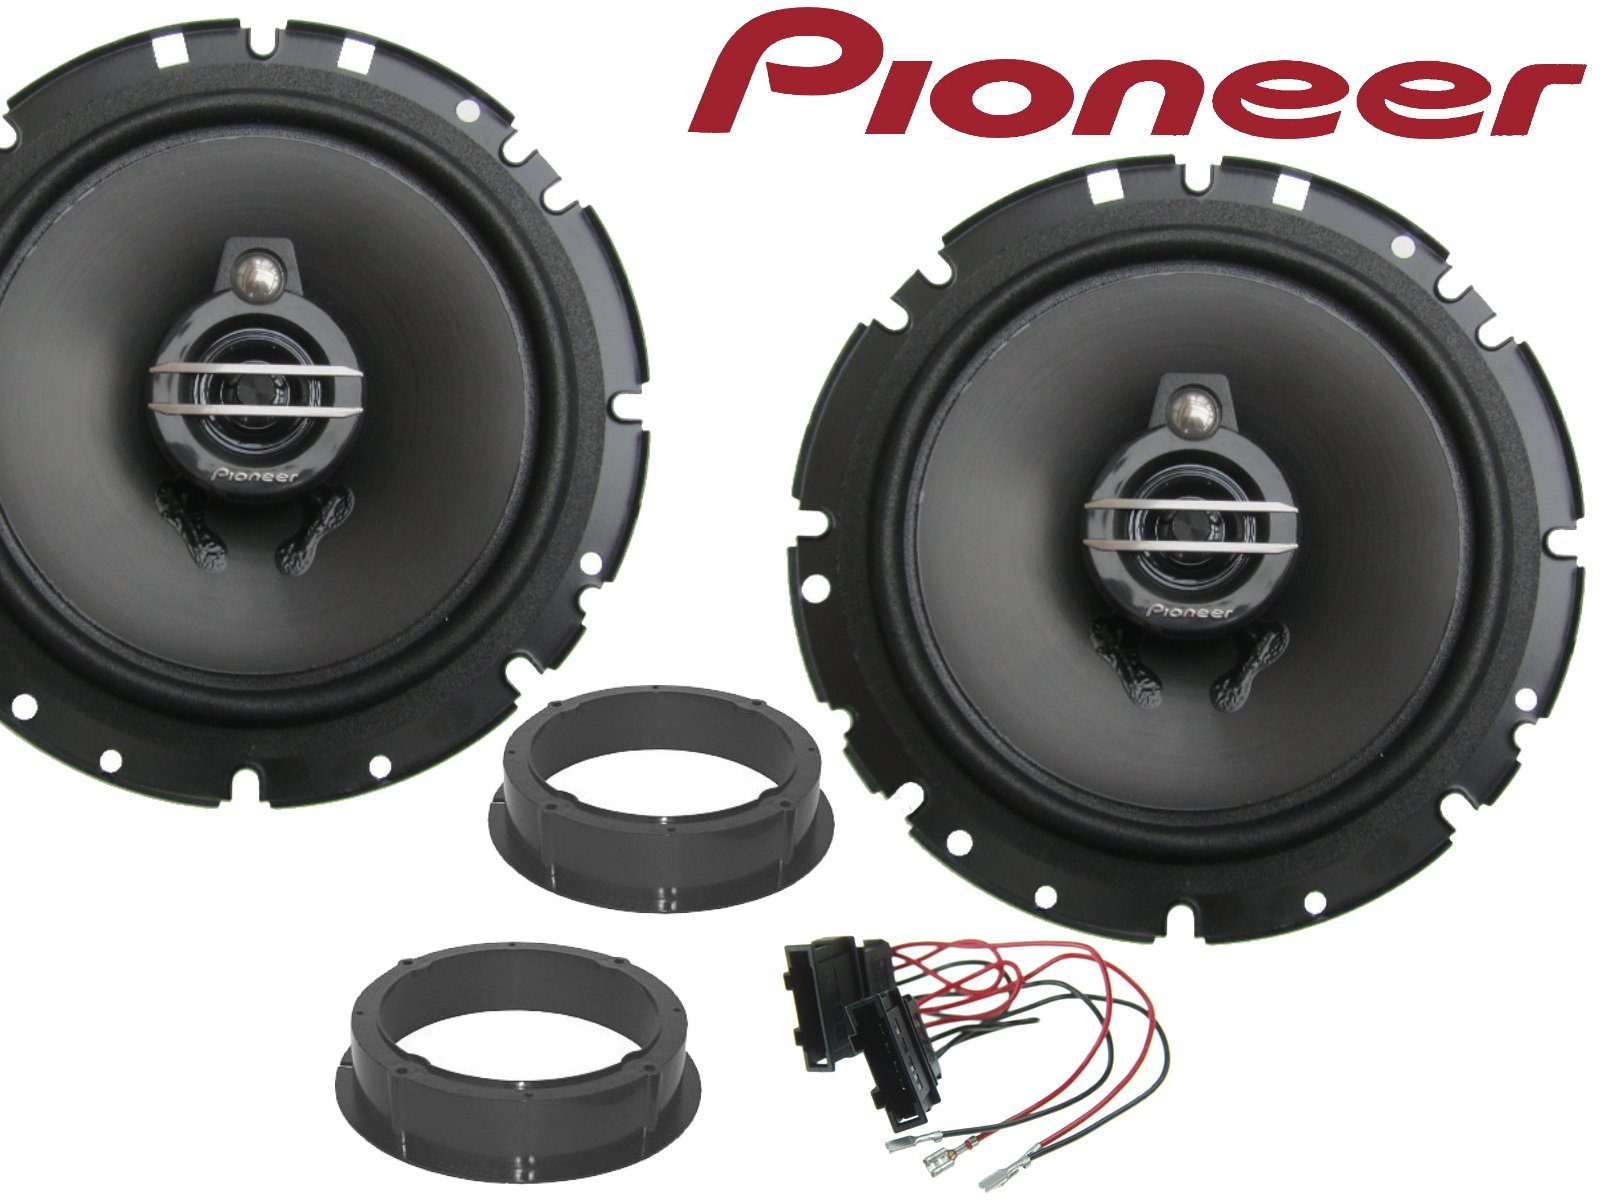 DSX Pioneer 3Wege passend für VW Fox Bj 03-09 Lautspr Auto-Lautsprecher (40 W)